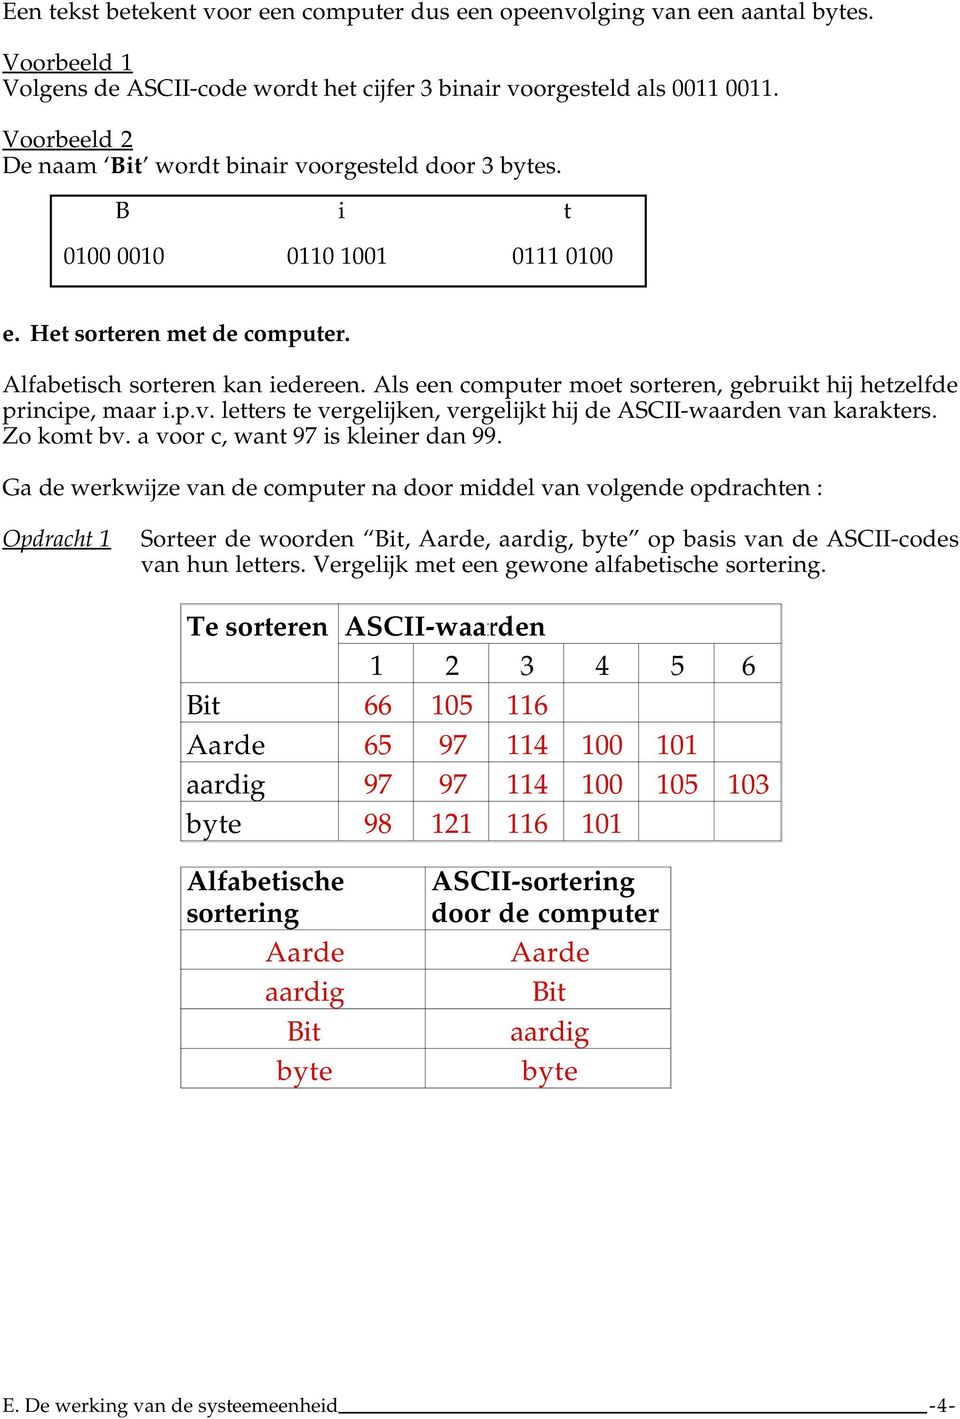 Als een computer moet sorteren, gebruikt hij hetzelfde principe, maar i.p.v. letters te vergelijken, vergelijkt hij de ASCII-waarden van karakters. Zo komt bv. a voor c, want 97 is kleiner dan 99.